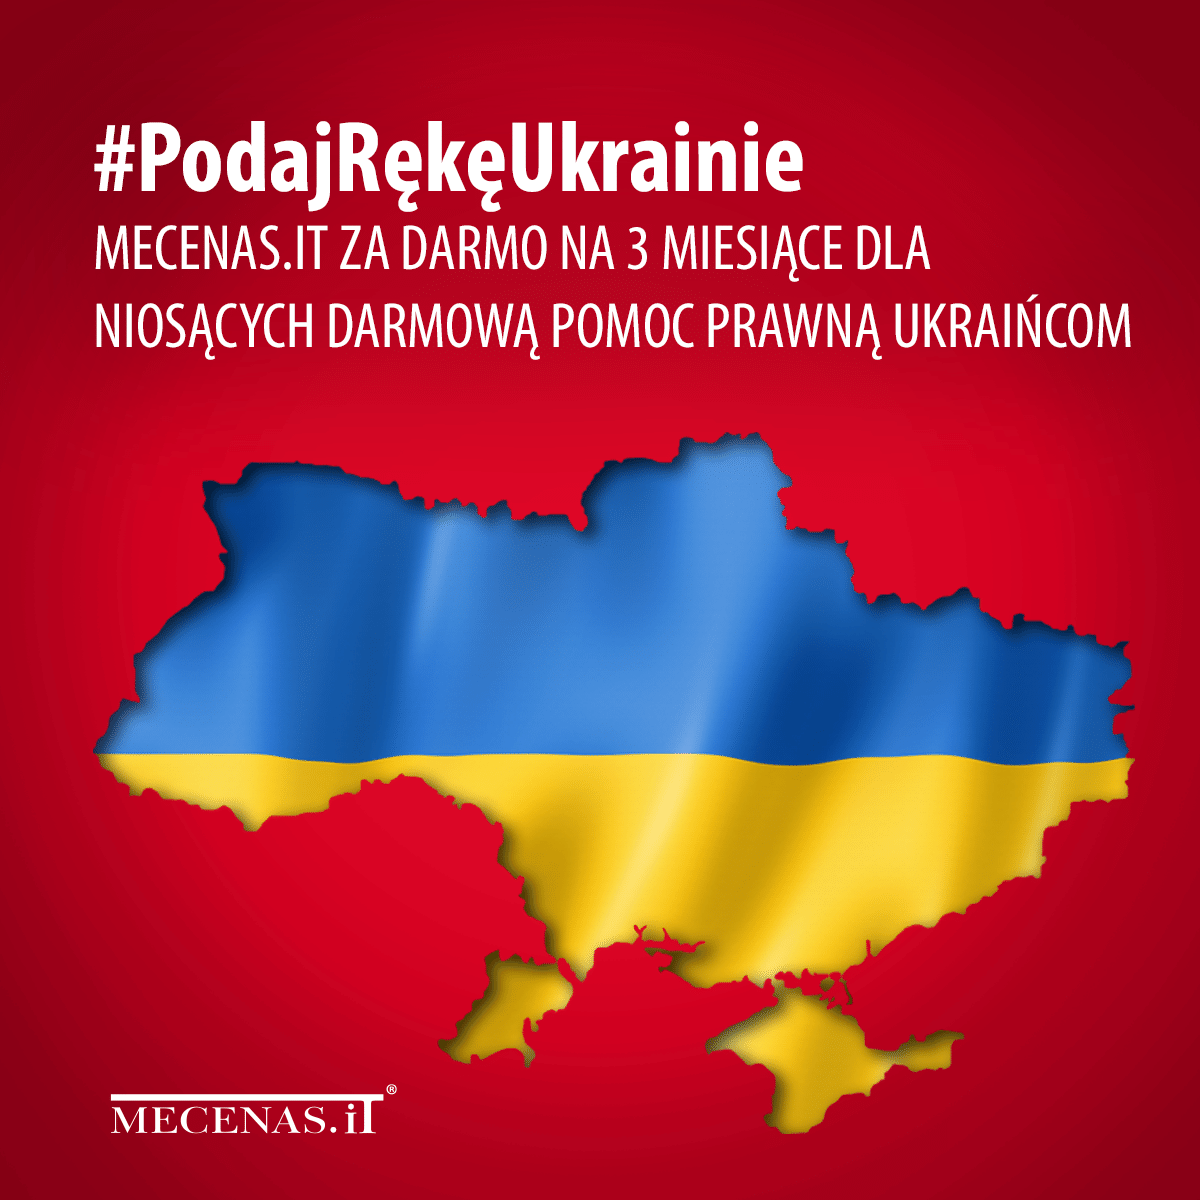 #PodajRękęUkrainie – Mecenas.iT wspiera kancelarie pomagające uchodźcom z Ukrainy